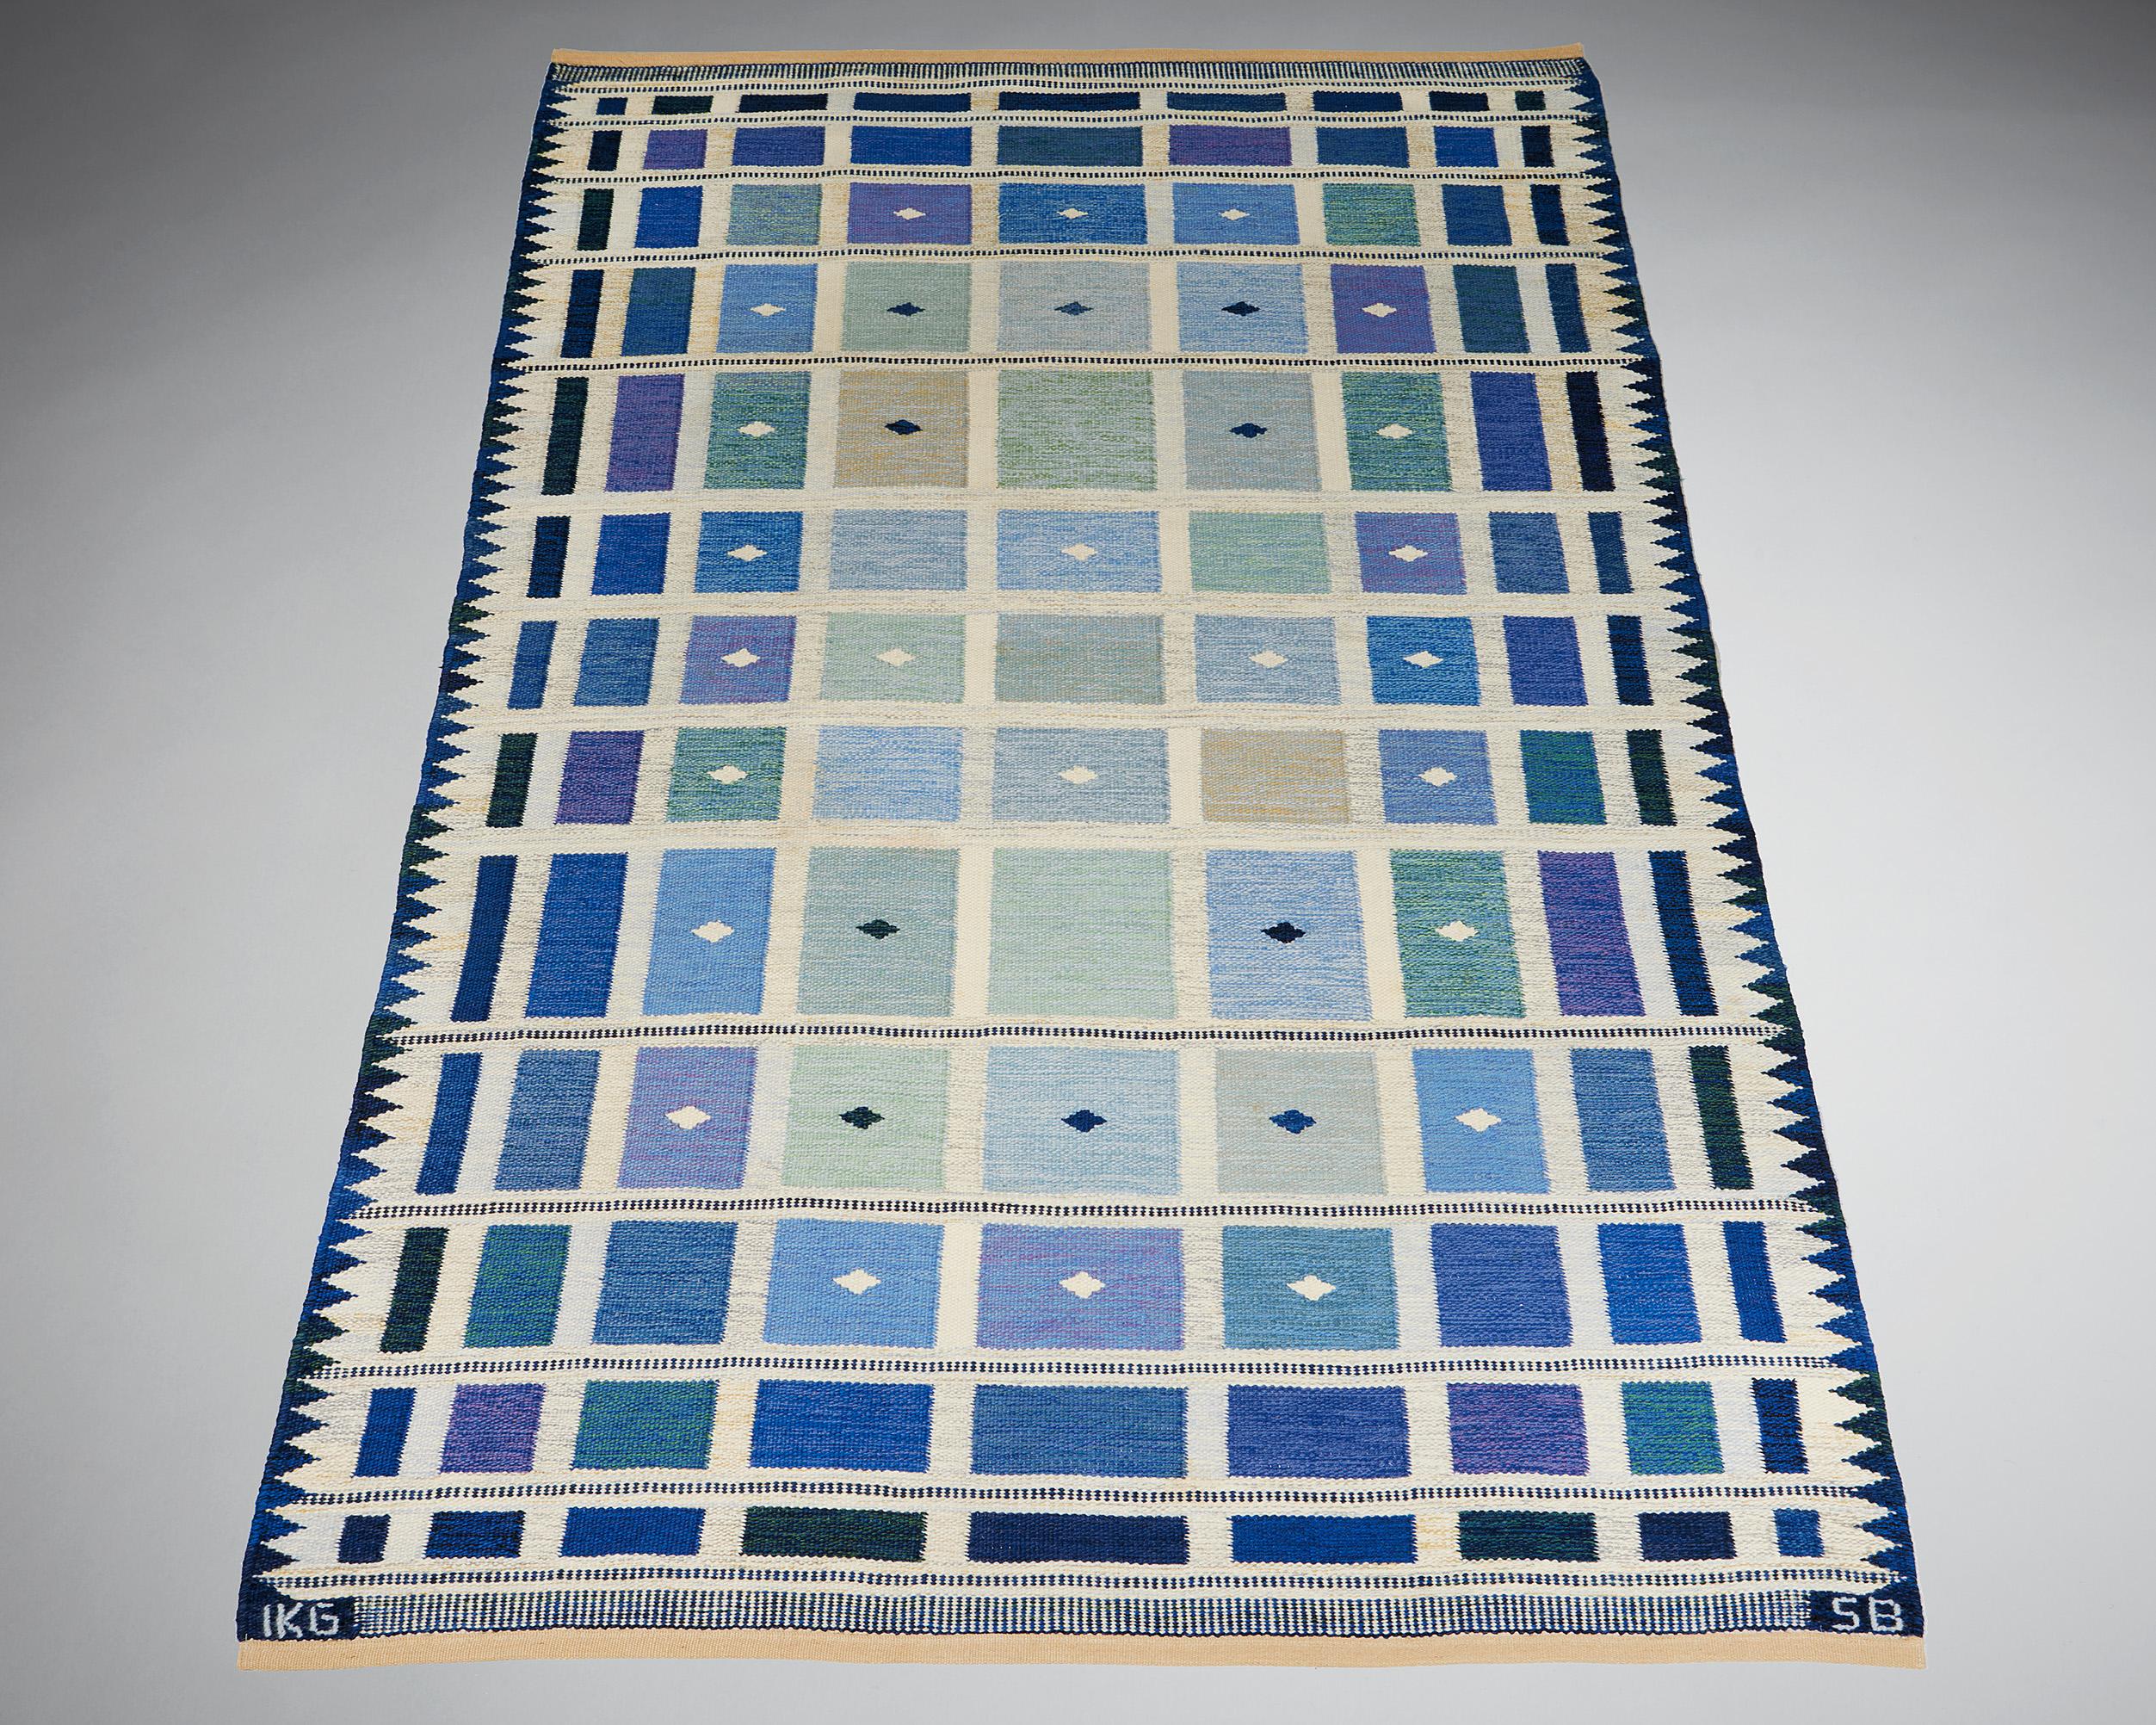 Ce tapis accrocheur a été conçu par Sigvard Bernadotte en Suède dans les années 1950. Le textile a été tissé selon un motif composé de carrés géométriques dans différentes nuances de bleu, divisés par une grille blanche. Ce contraste accentue encore